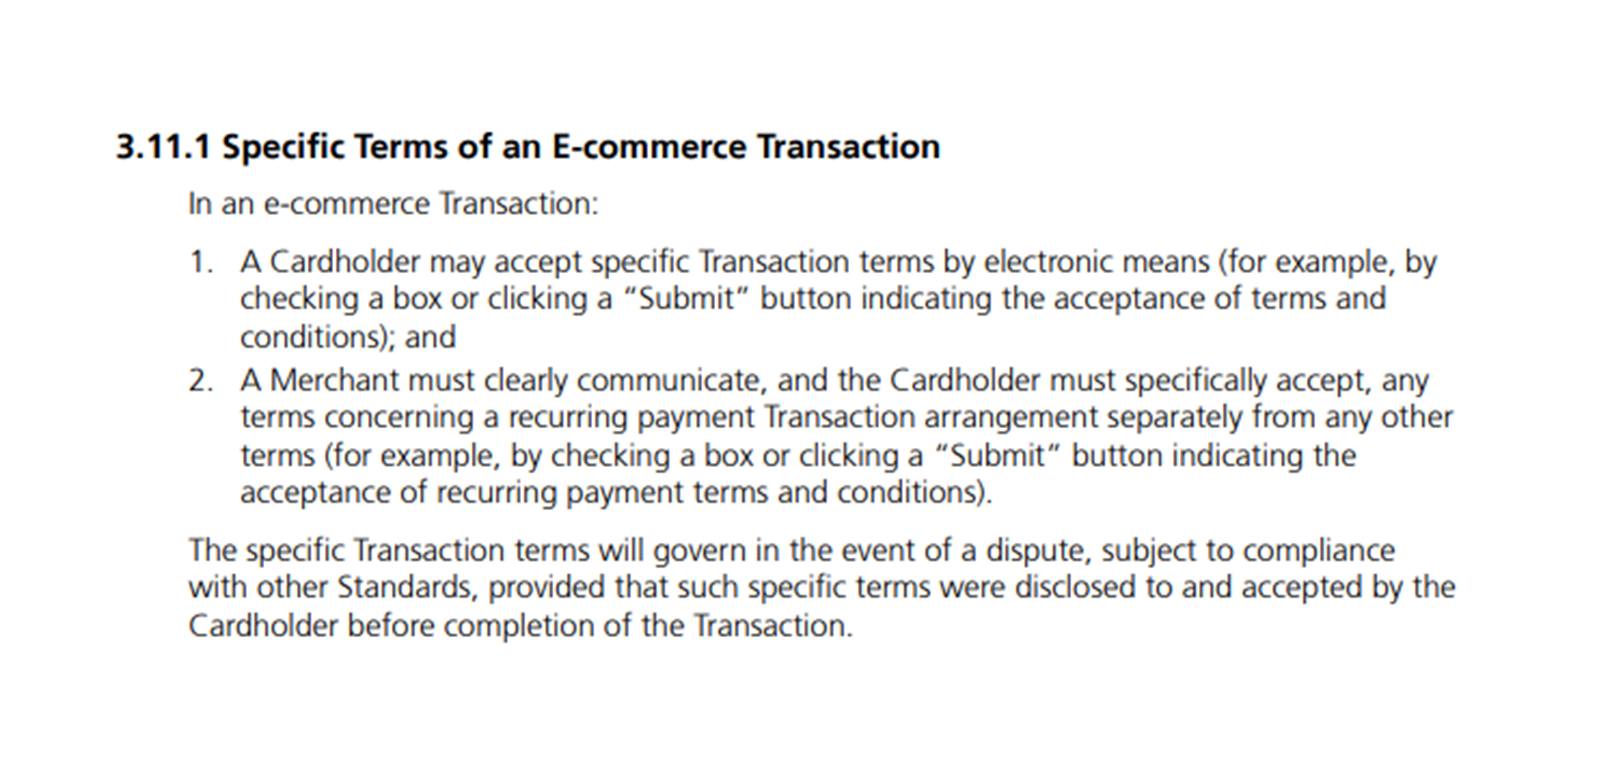 マスターカード利用規約 Transaction Processing Rules https://www.mastercard.us/content/dam/mccom/global/documents/transaction-processing-rules.pdf より